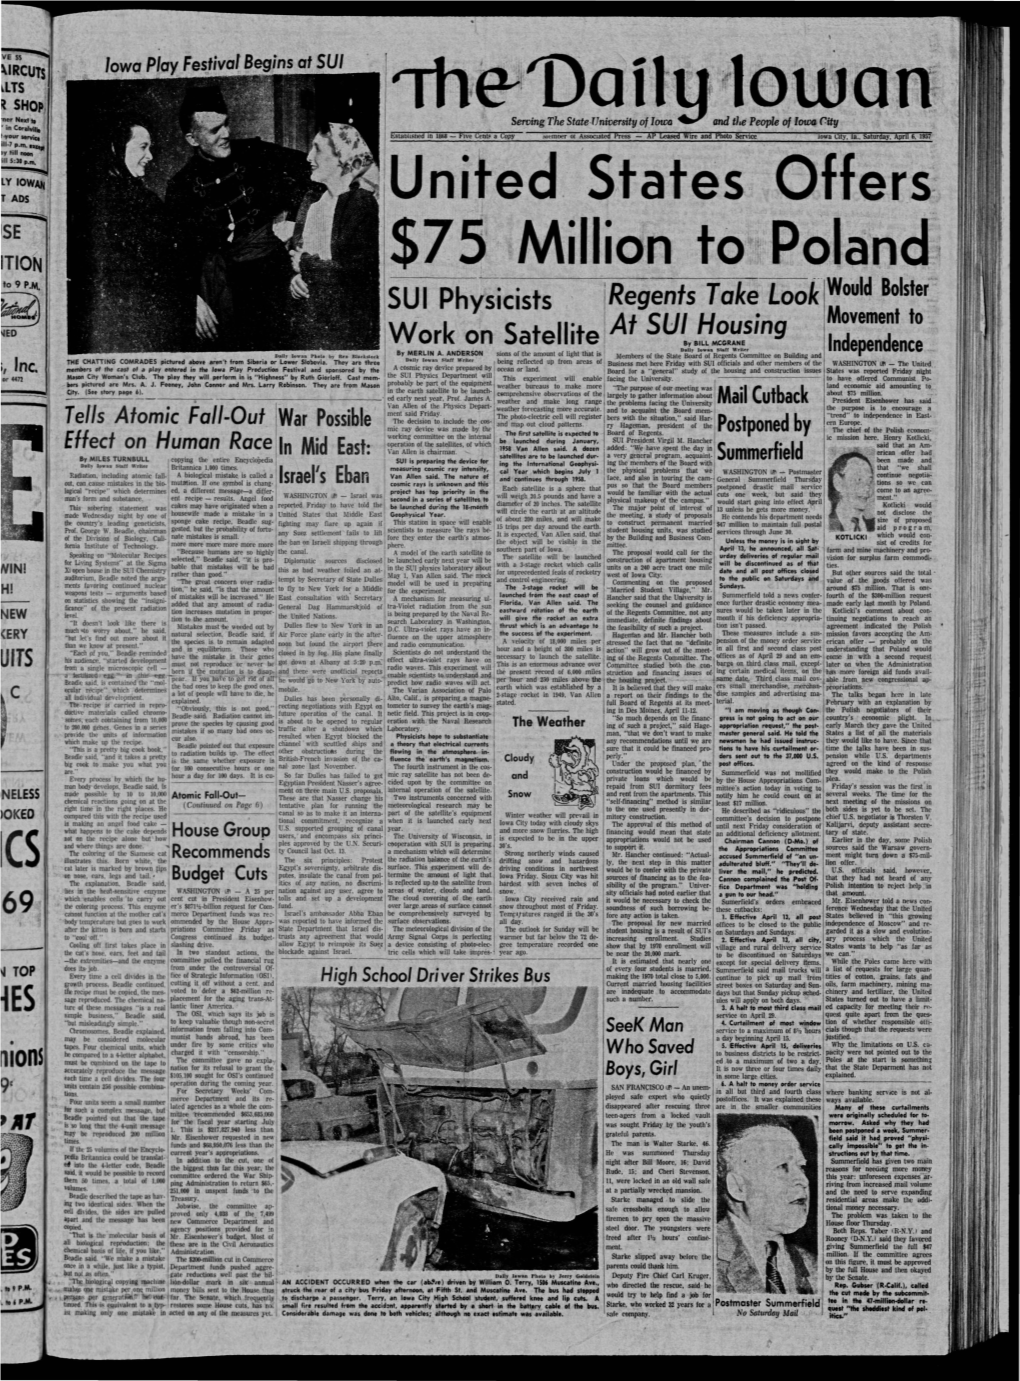 Daily Iowan (Iowa City, Iowa), 1957-04-06